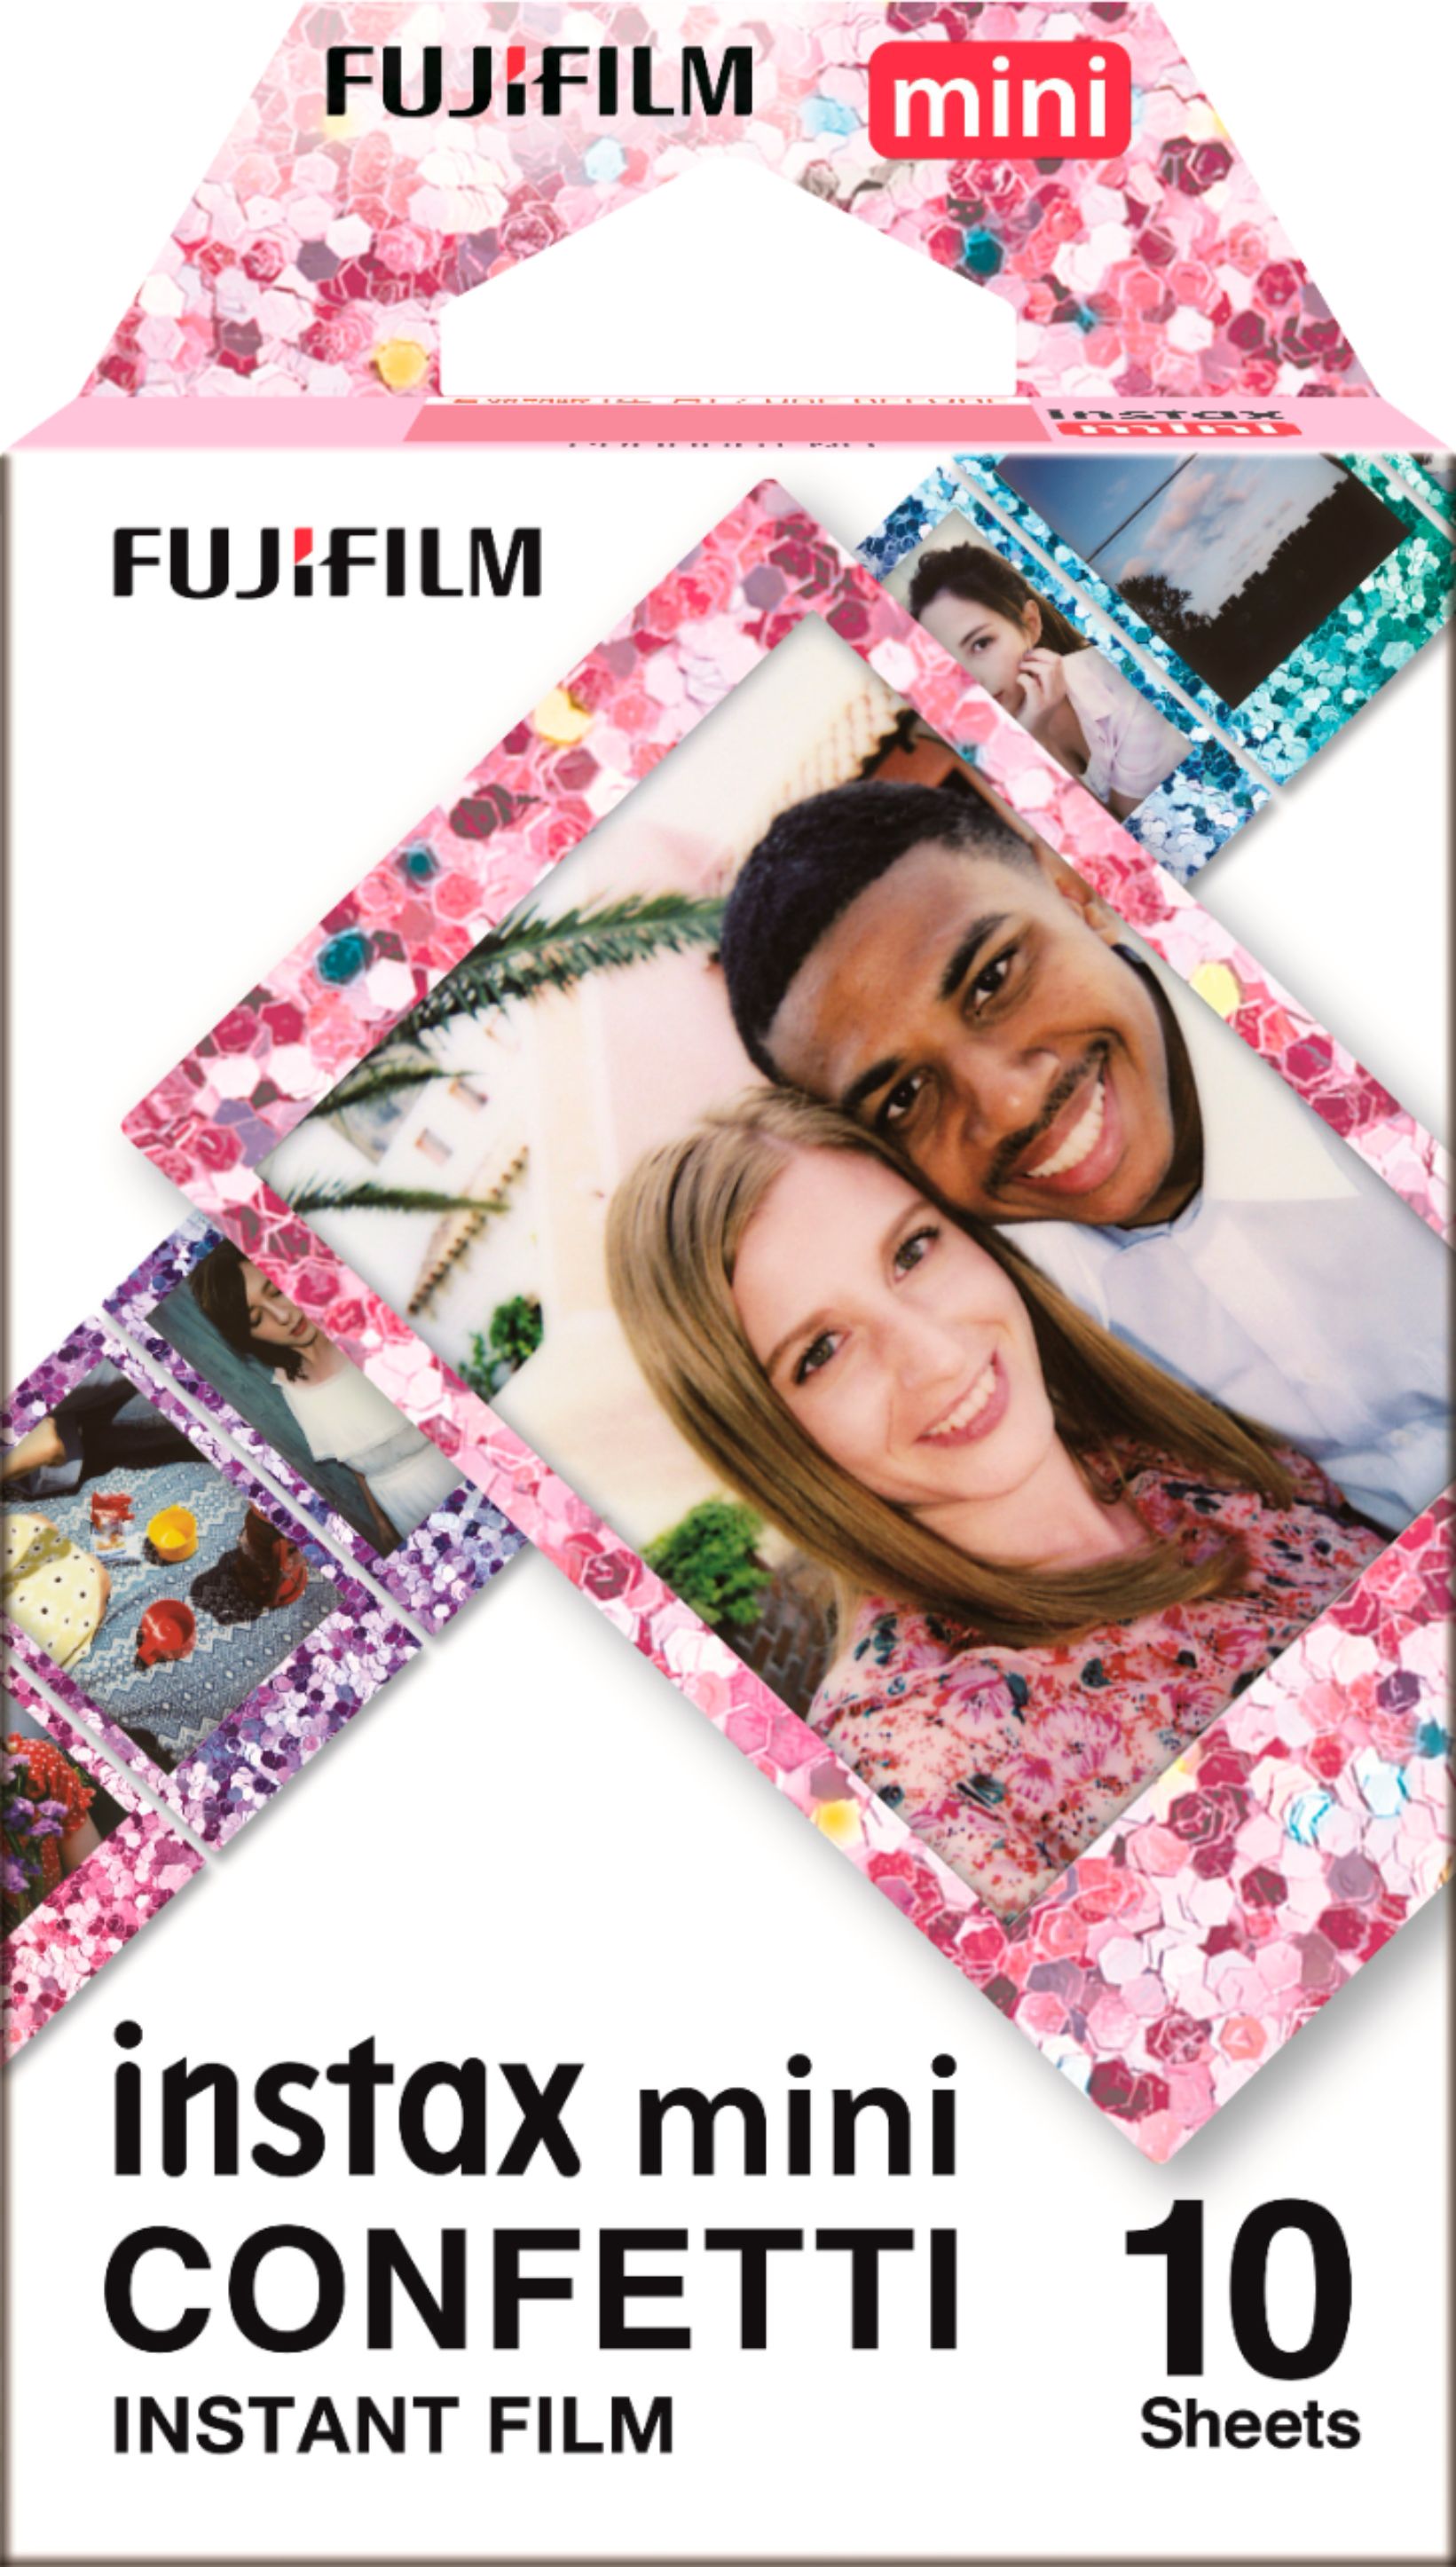 Angle View: Fujifilm - INSTAX MINI Confetti Instant Film